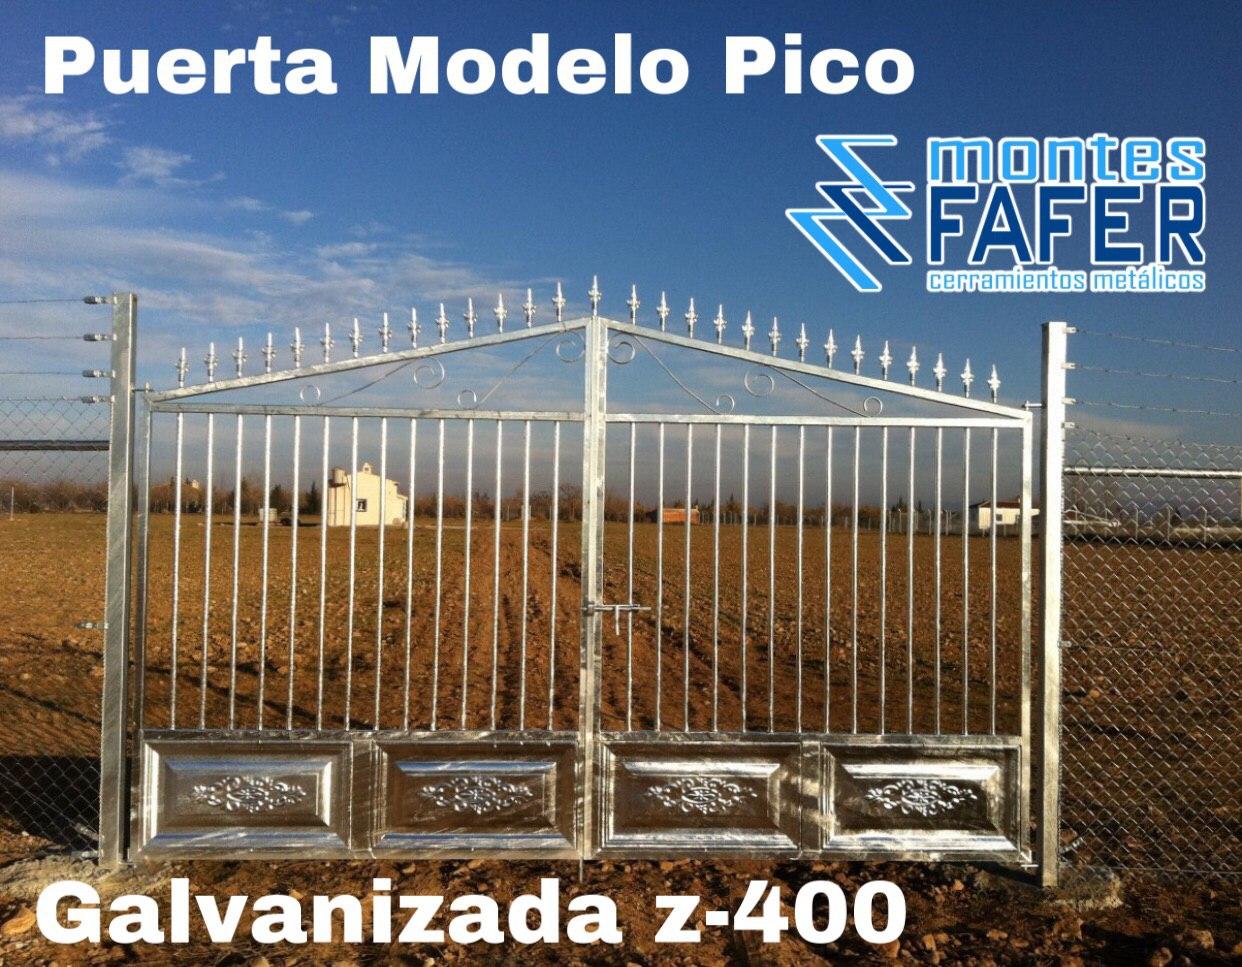 Puerta modelo pico galvanizada z400 MontesFafer